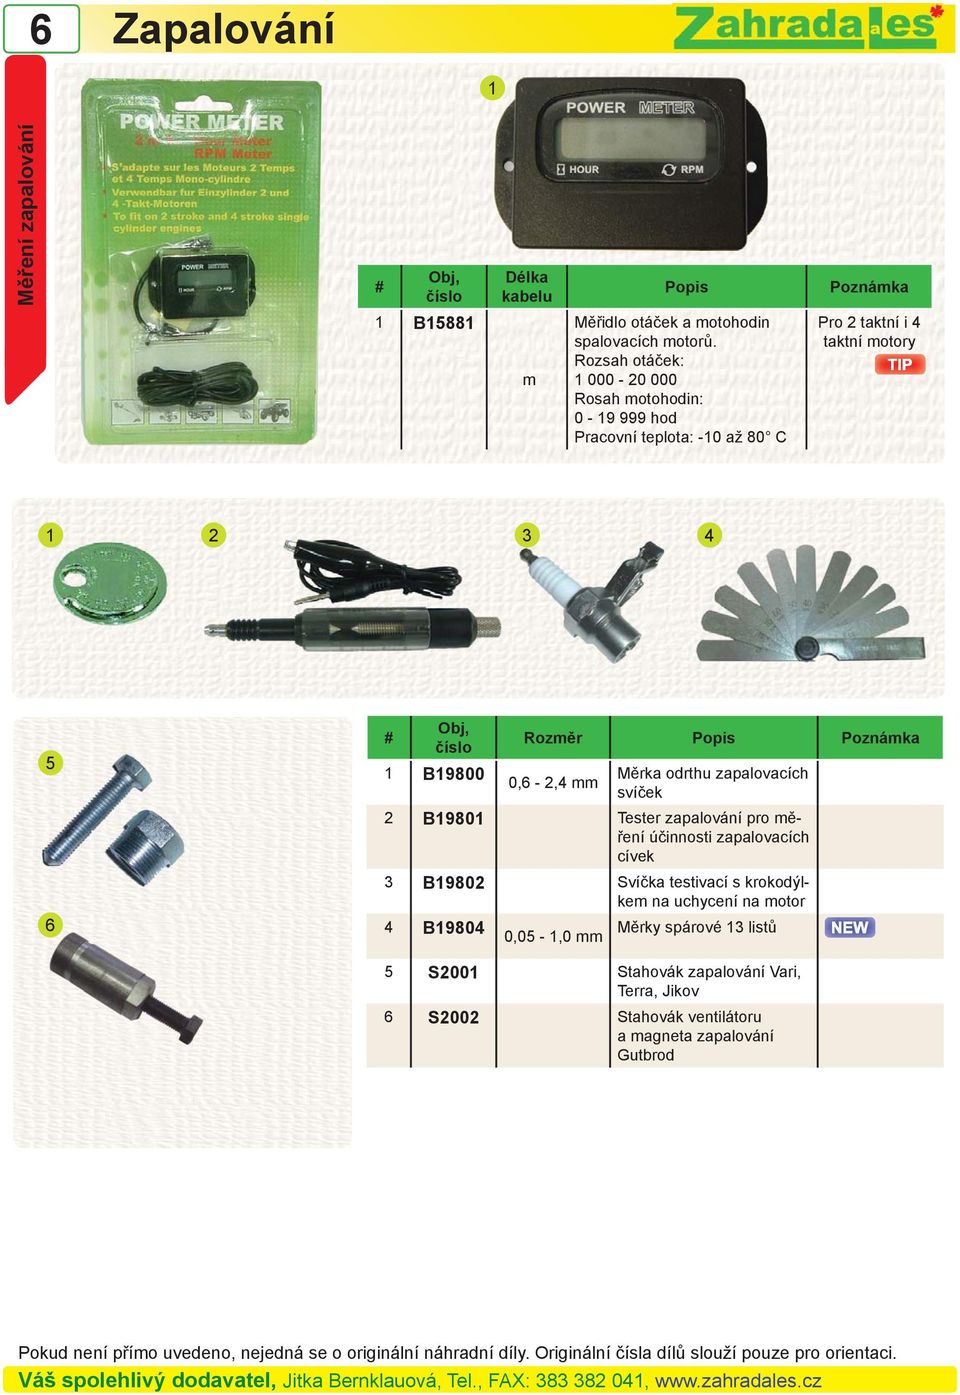 Rozměr Popis 0, - 2,4 mm Měrka odrthu zapalovacích svíček 2 B19801 Tester zapalování pro měření účinnosti zapalovacích cívek 3 B19802 Svíčka testivací